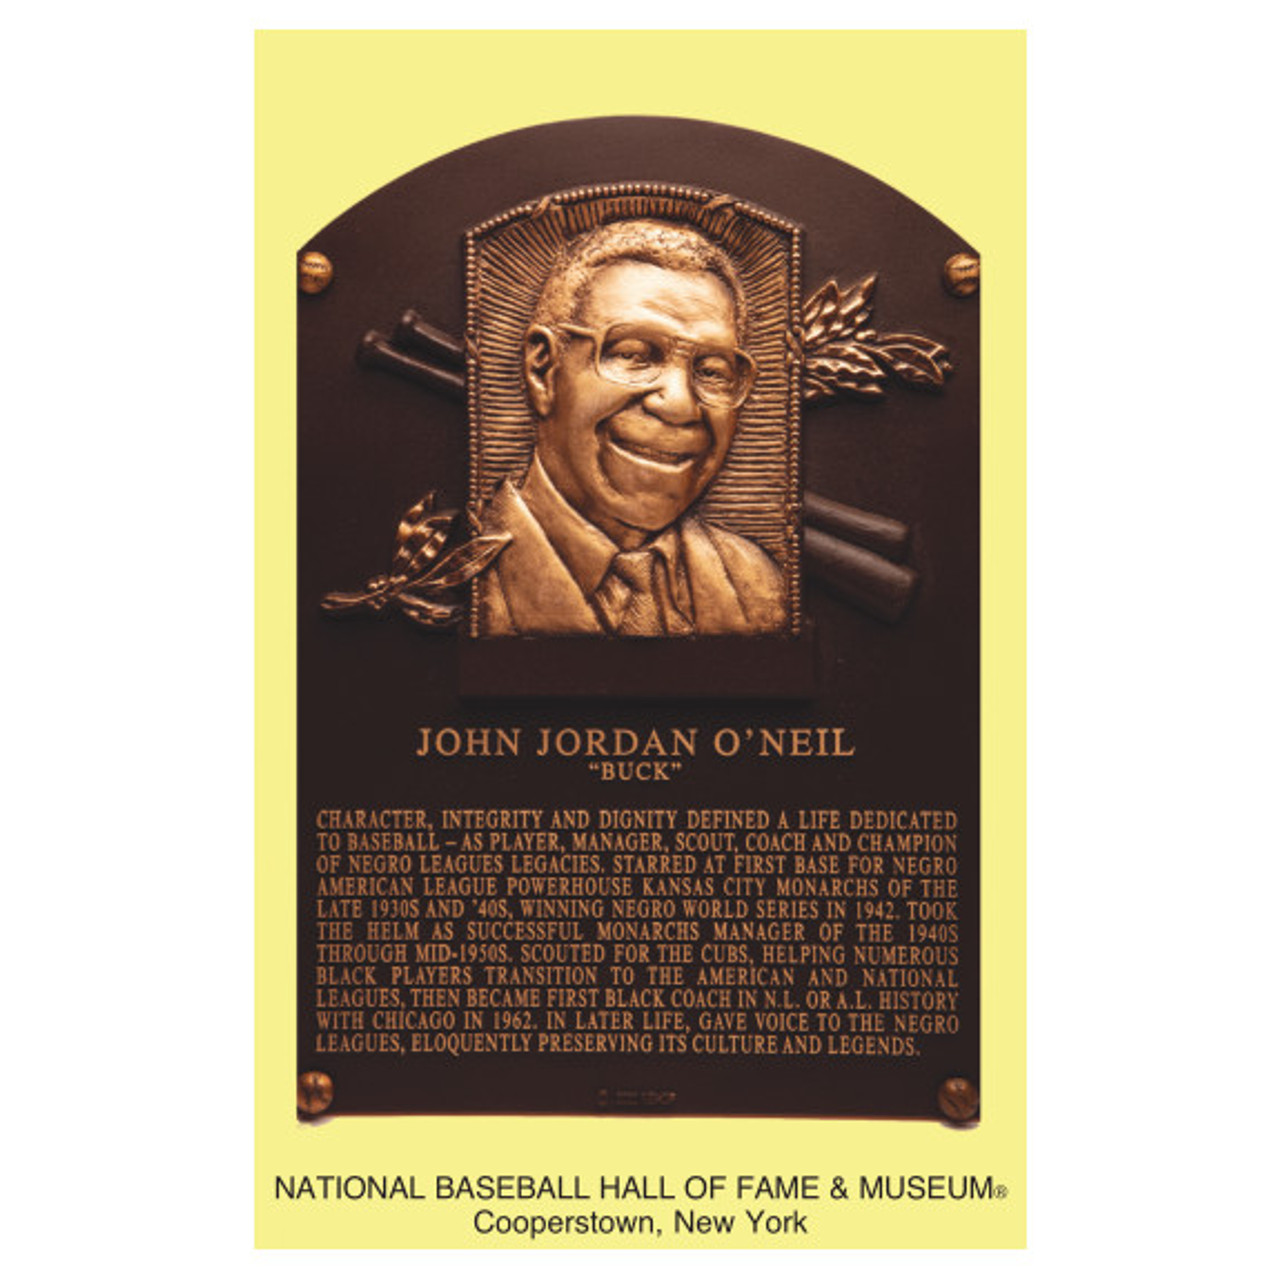 Buck O'Neil and the Baseball Hall of Fame